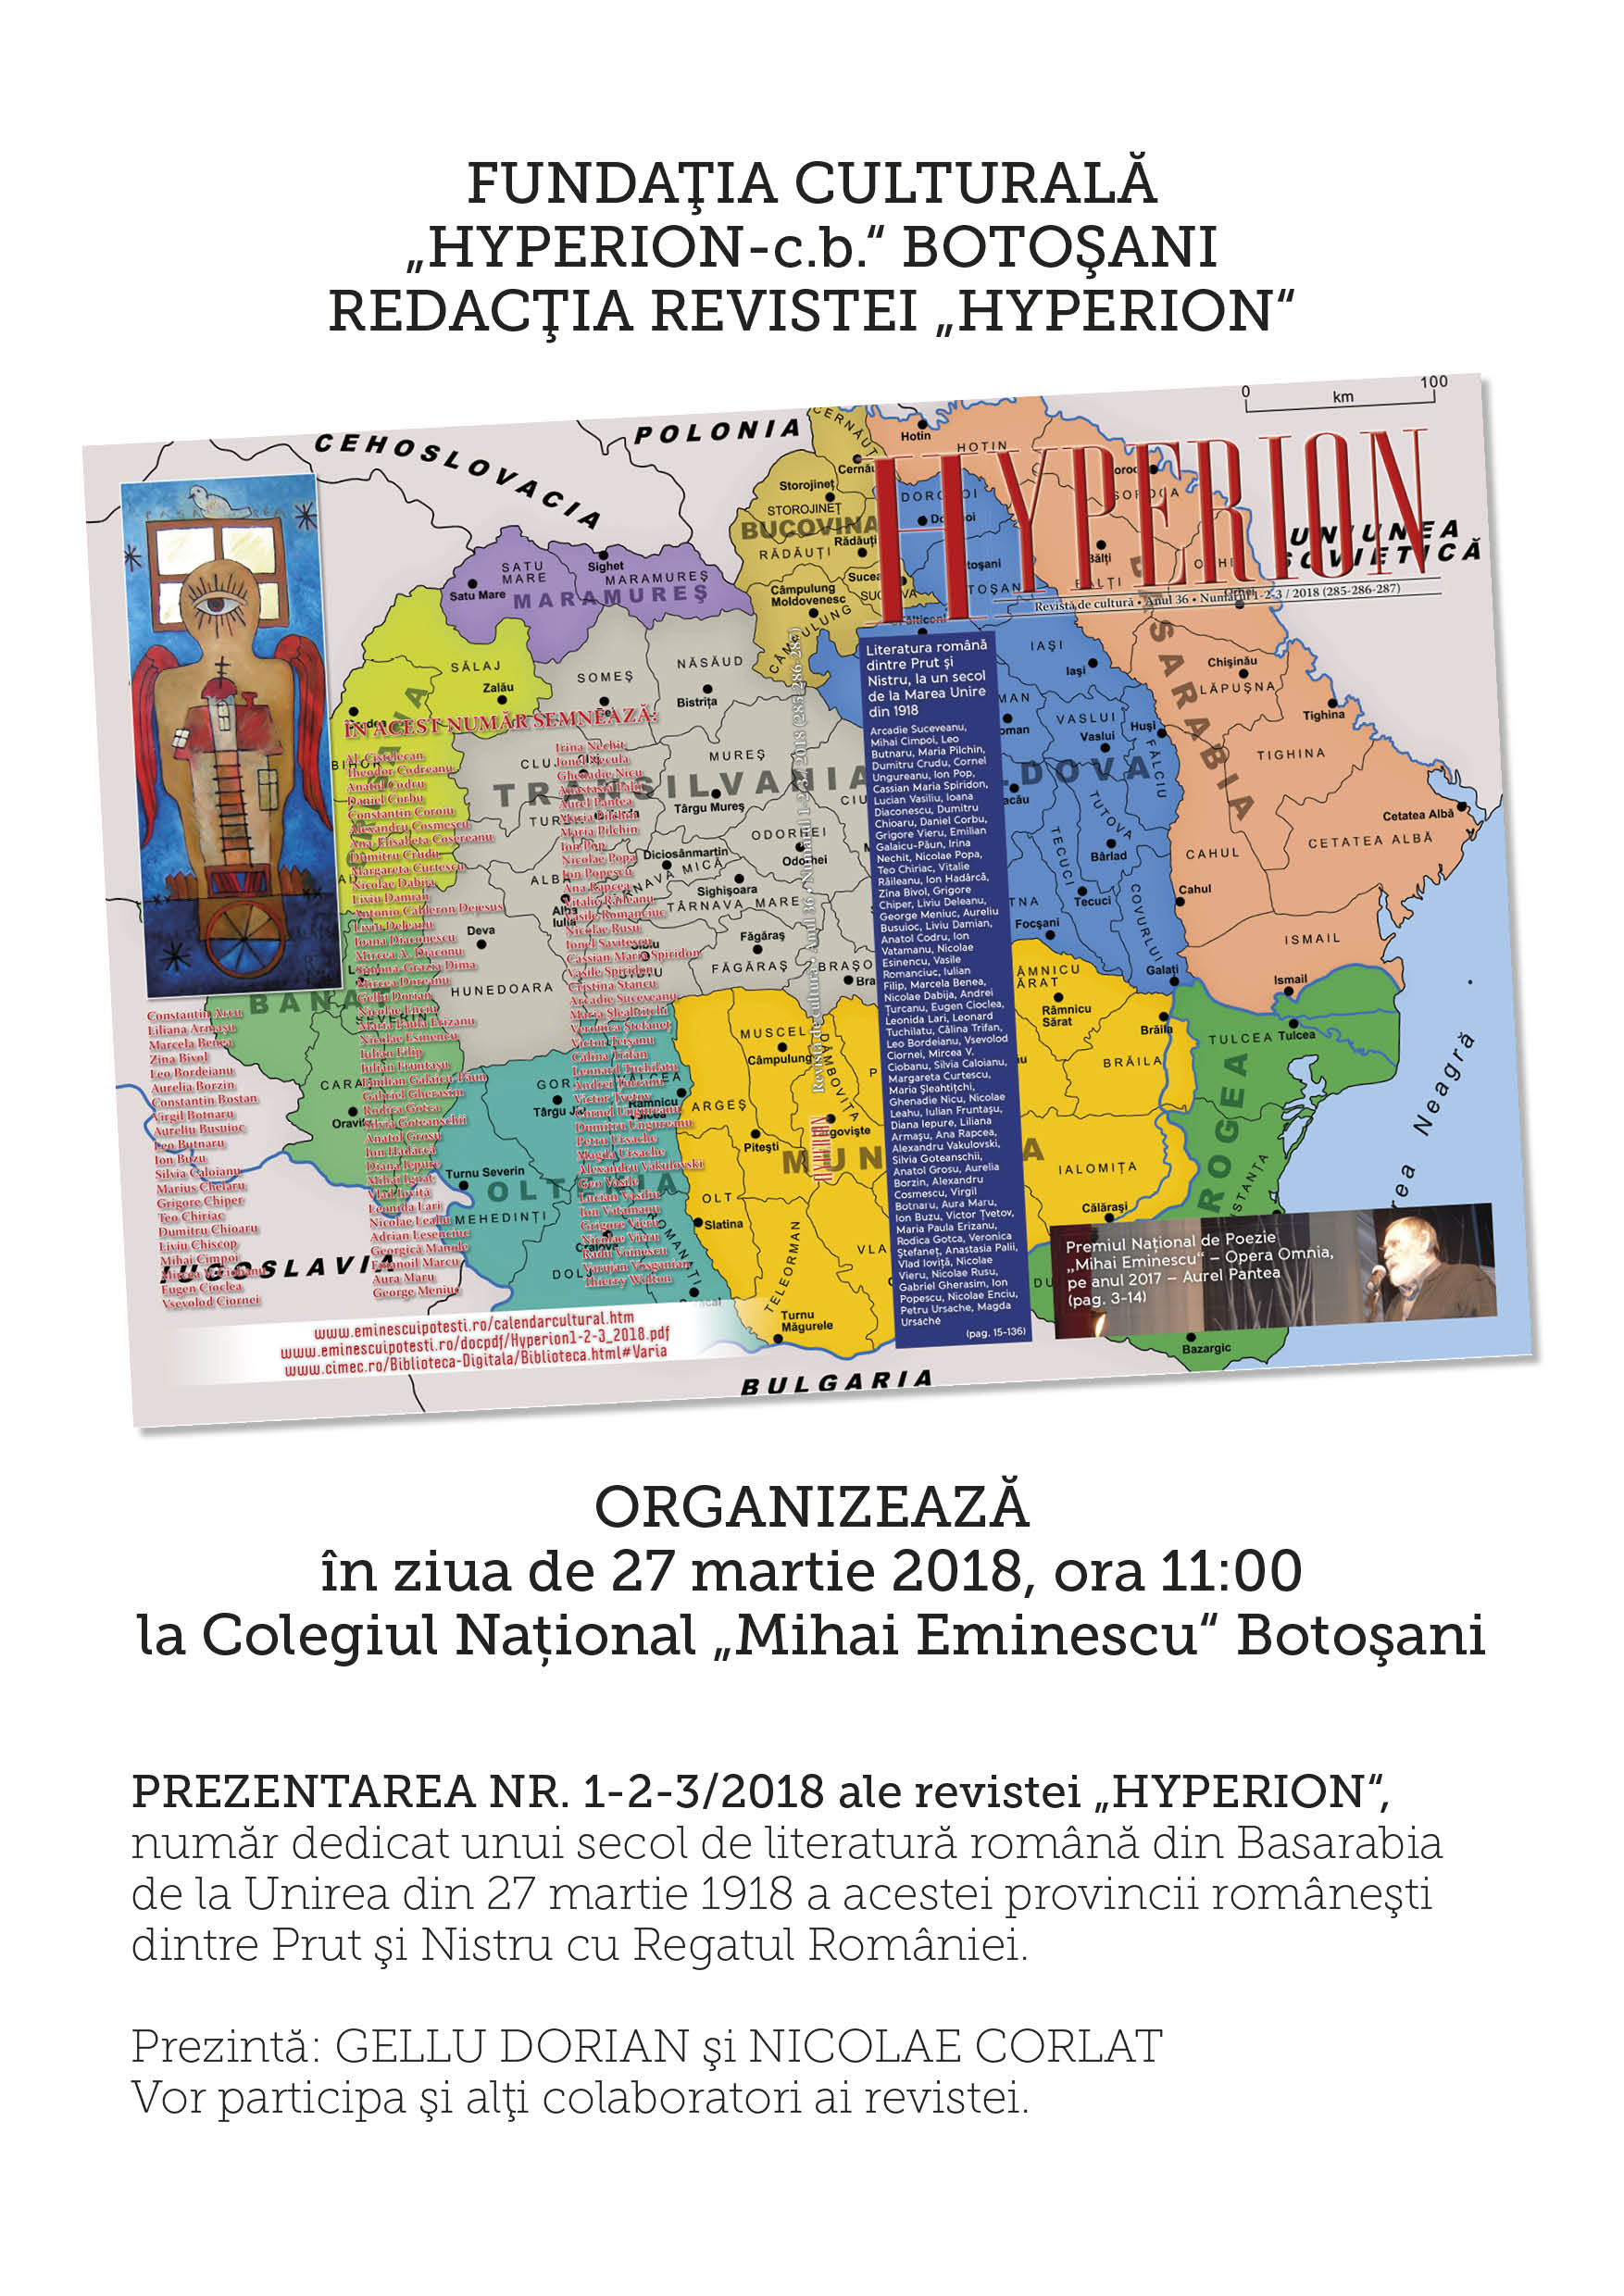 Botoșani: Prezentarea nr. 1/ 2018 al revistei “Hyperion”, dedicat literaturii române din Basarabia în ultimul secol